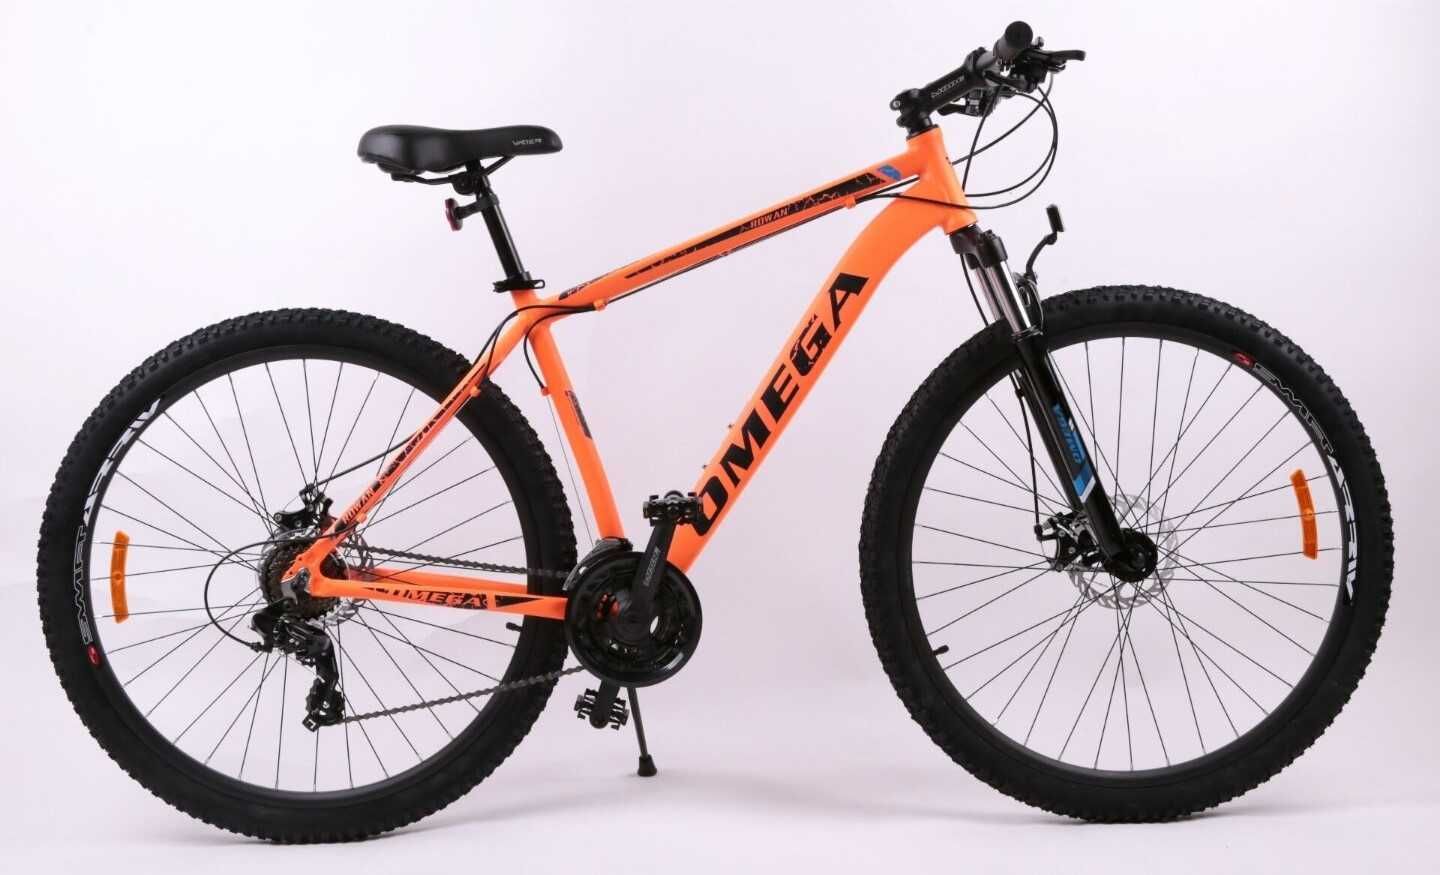 Bicicletă nouă 27.5" Rowan Omega, portocaliu-negru